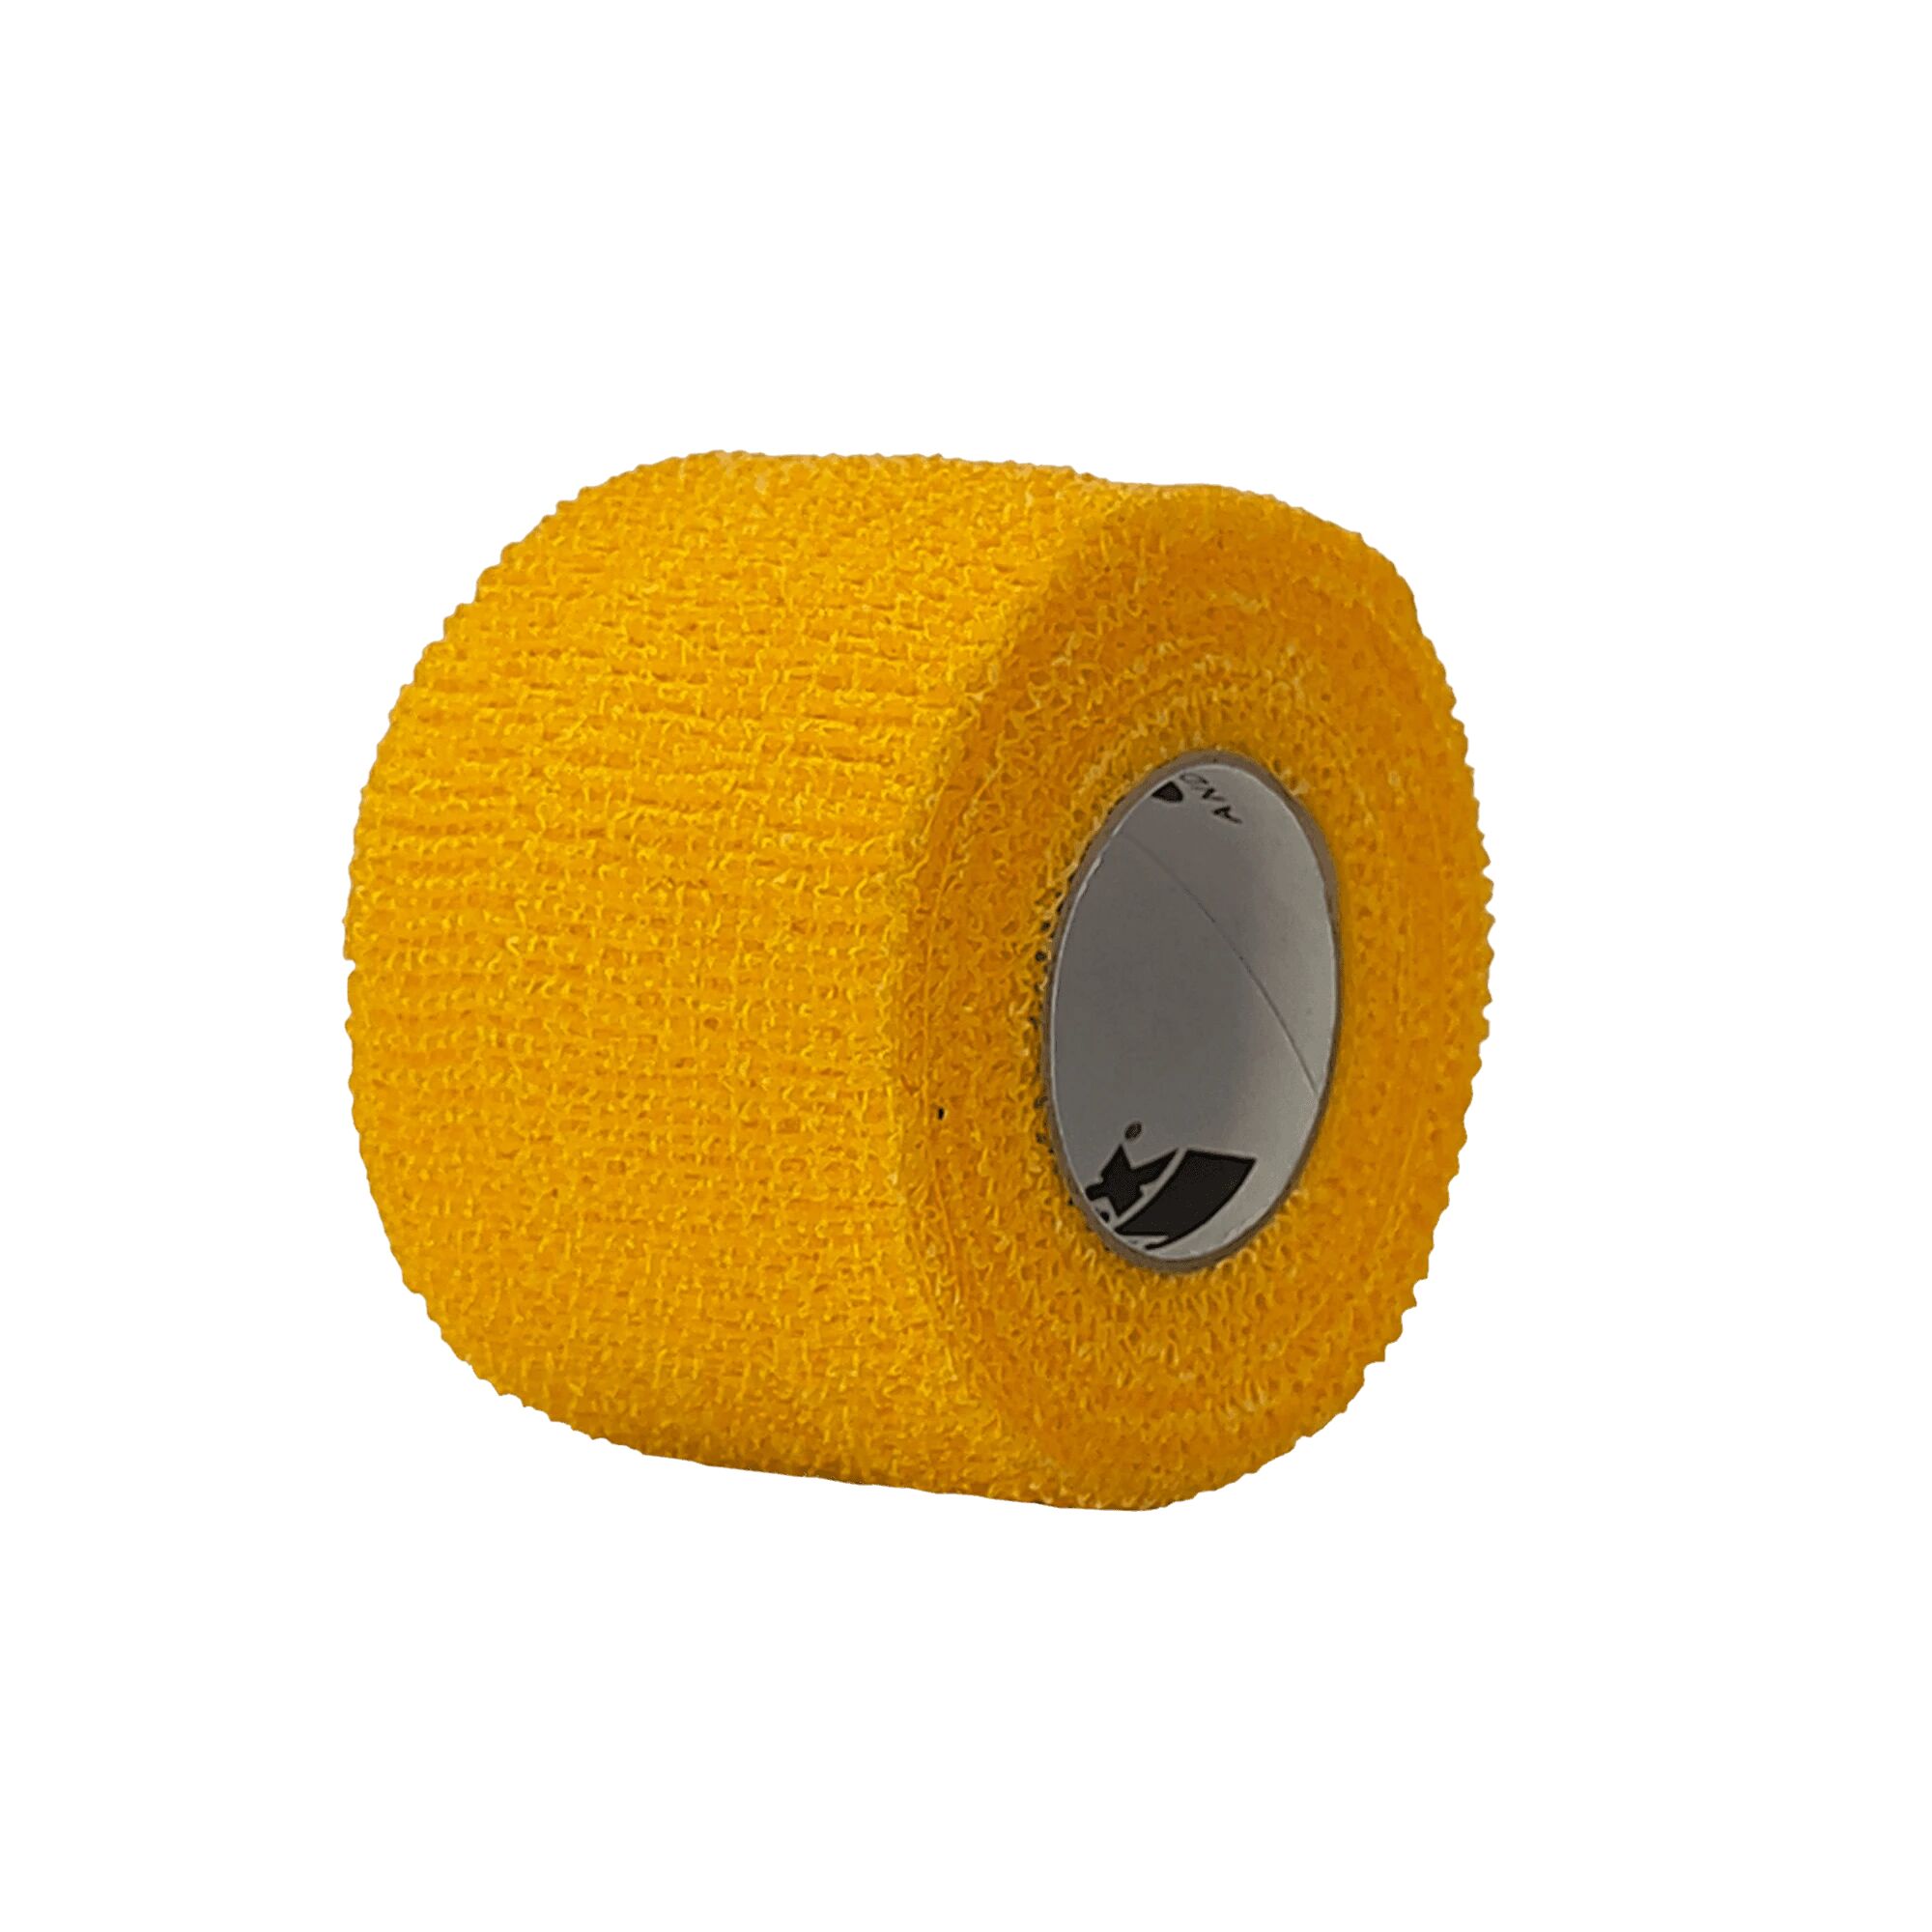 Powerflex grip tape 38mmx4,57 meter-48 pack Yelllow-21/22, hockeytape 38mmx4,57 meter Yellow